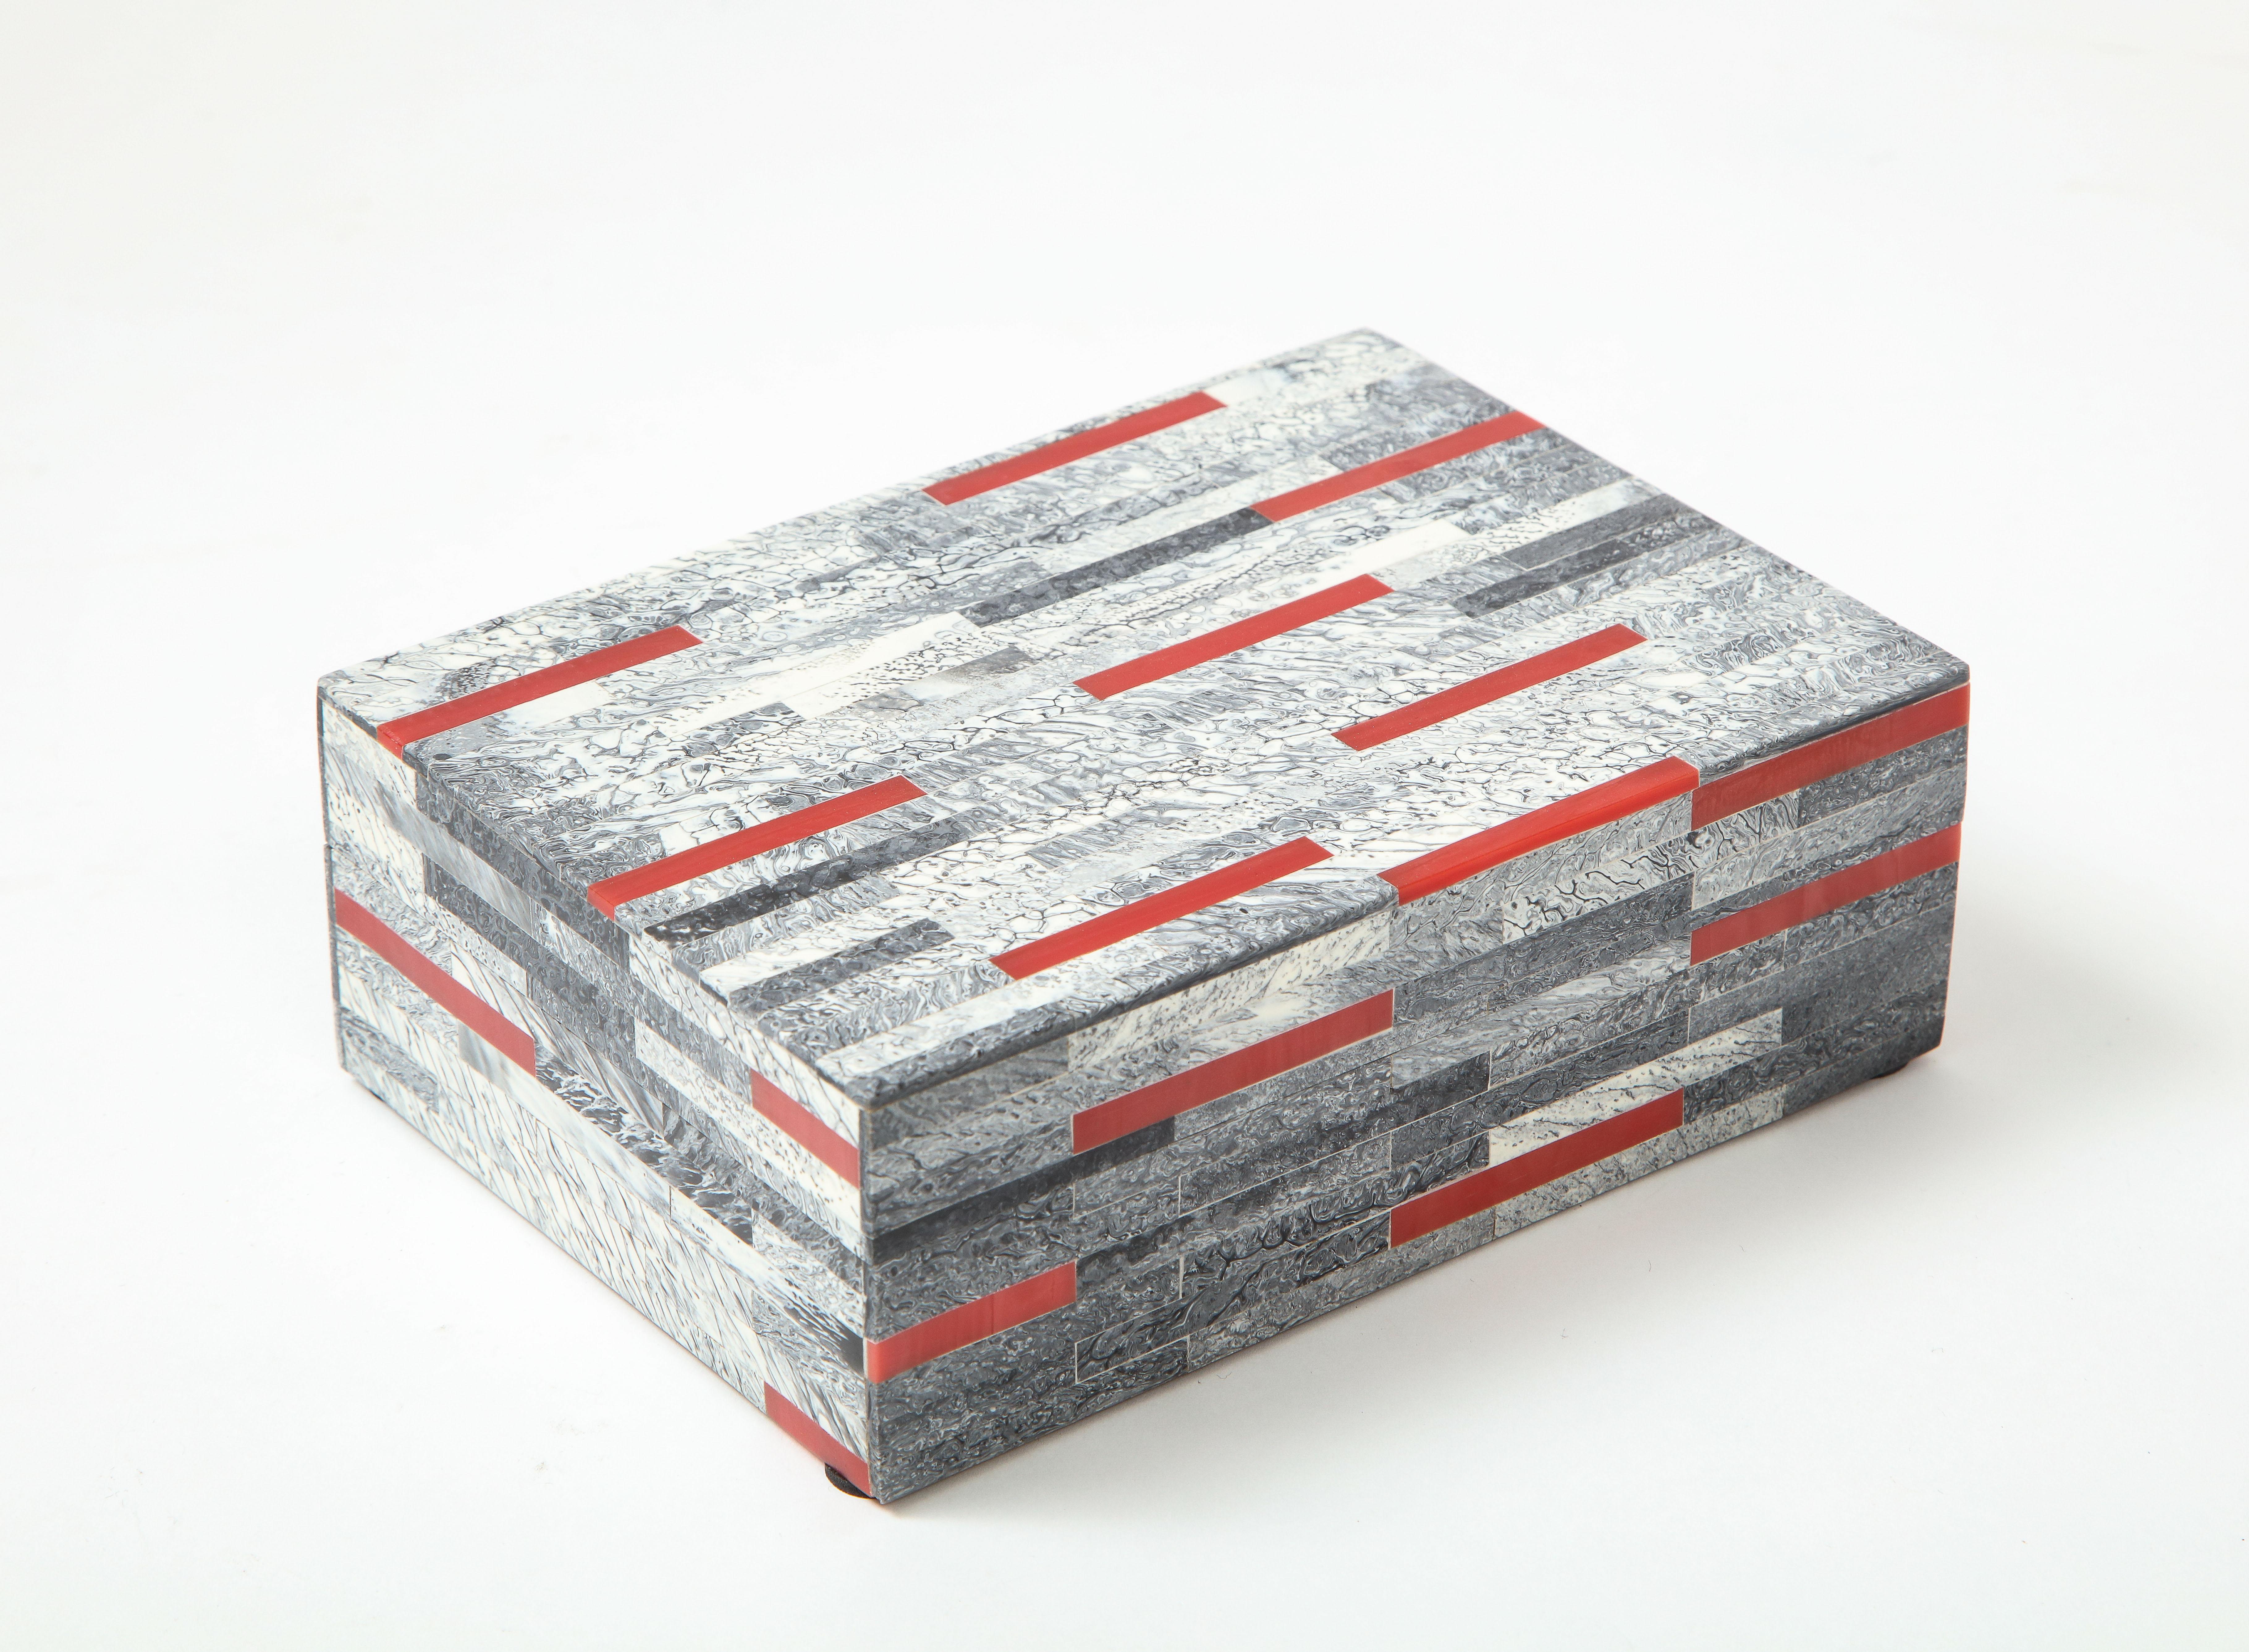 Handgefertigte Andenken-/Schreibtischbox mit handgeschnittenen und polierten grauen und roten Knochenfliesen auf einer Holzbox.